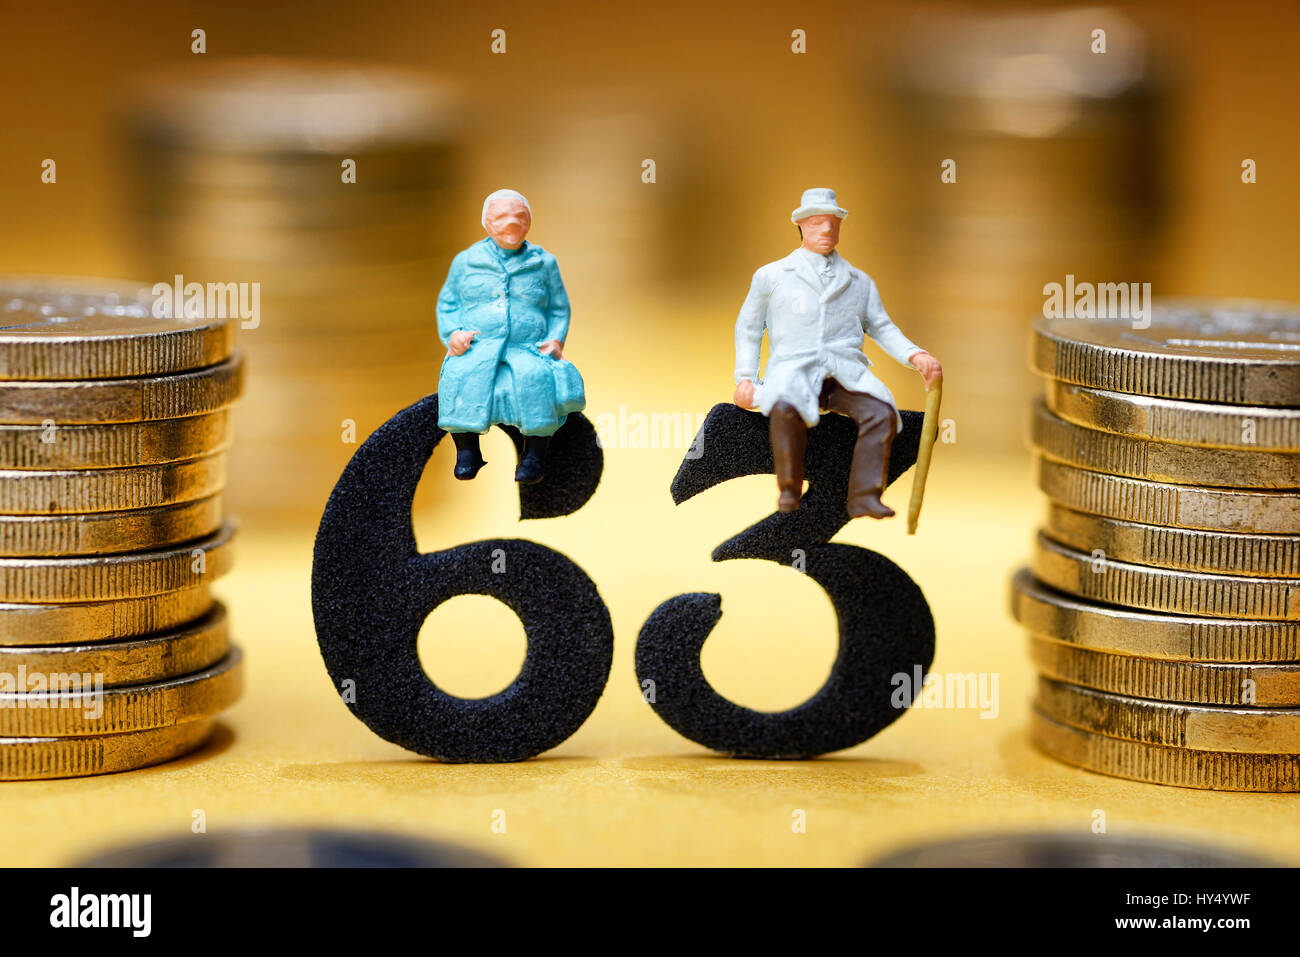 Senior citizen's pair on the number 63, symbolic photo pension at the age of 63 years, Seniorenpaar auf der Zahl 63, Symbolfoto Rente mit 63 Jahren Stock Photo